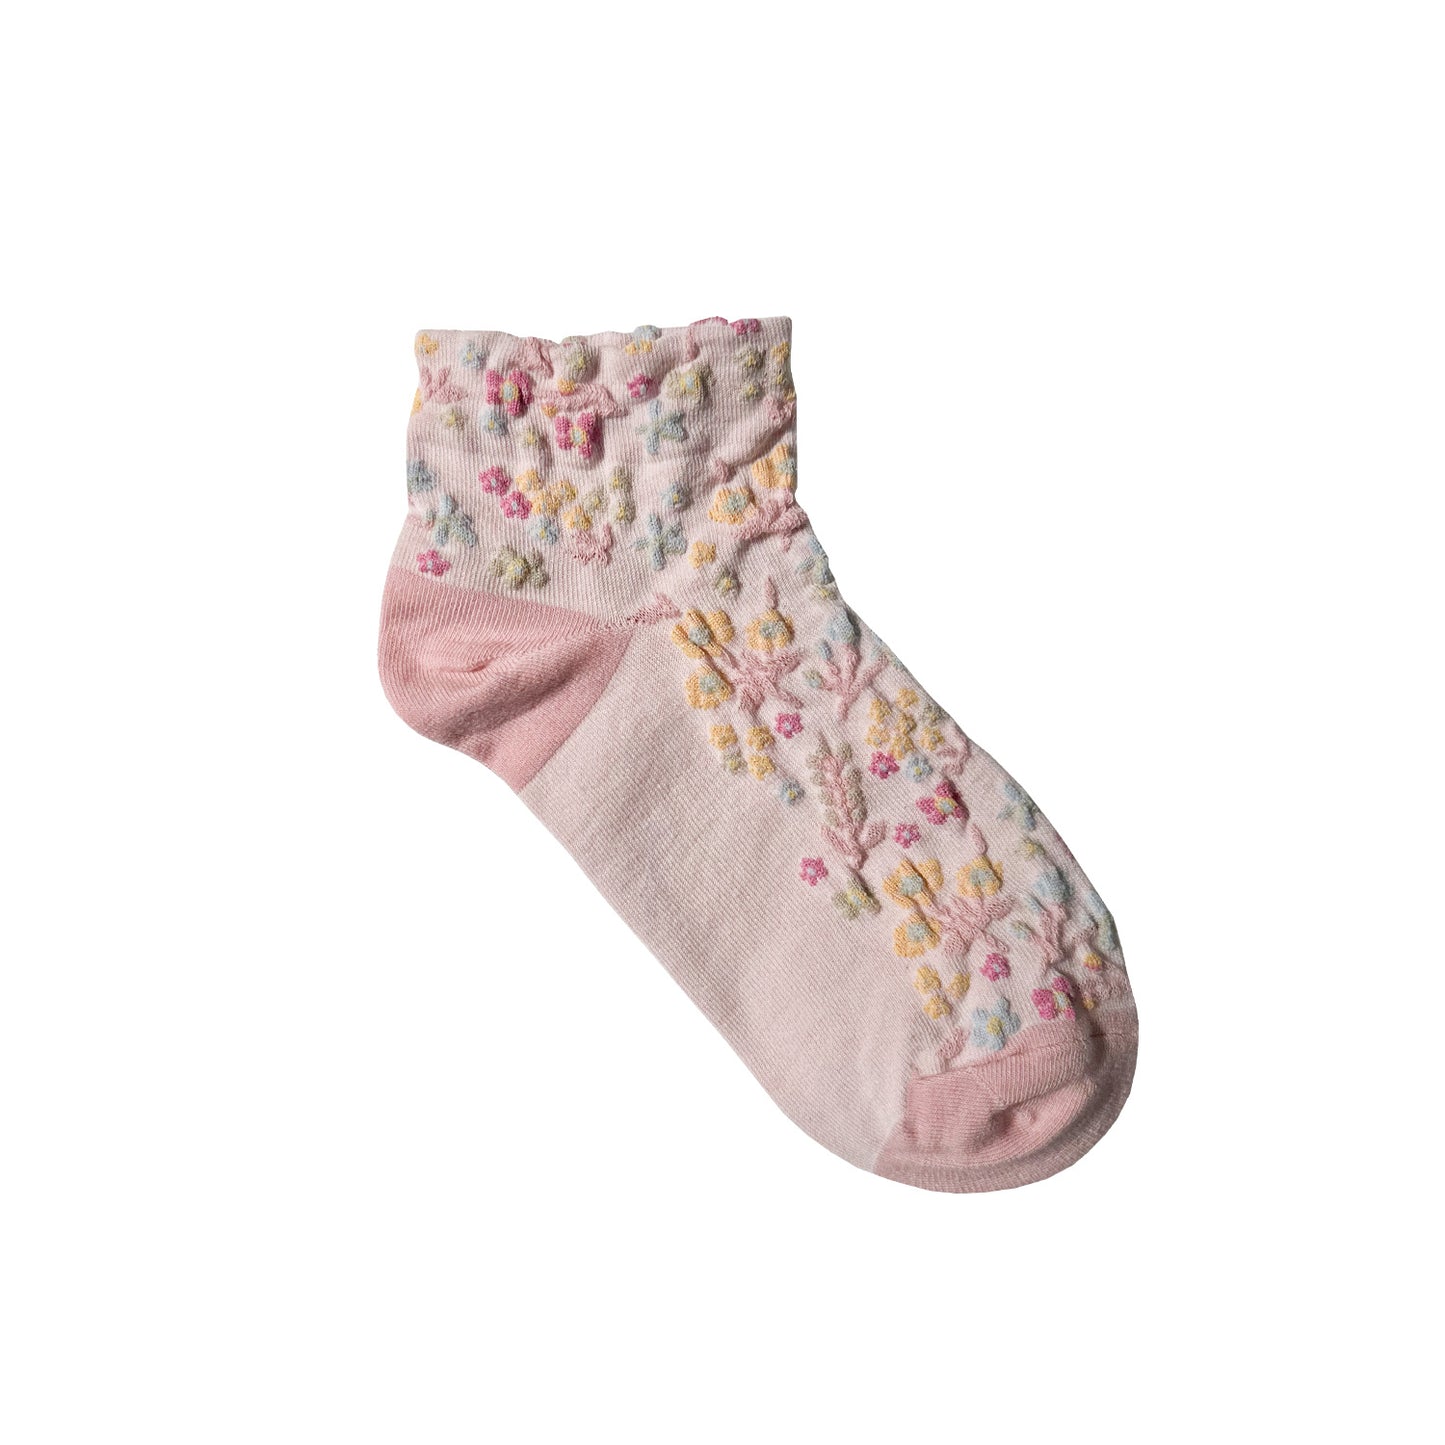 Women's Ankle Harga Garden Flower Socks